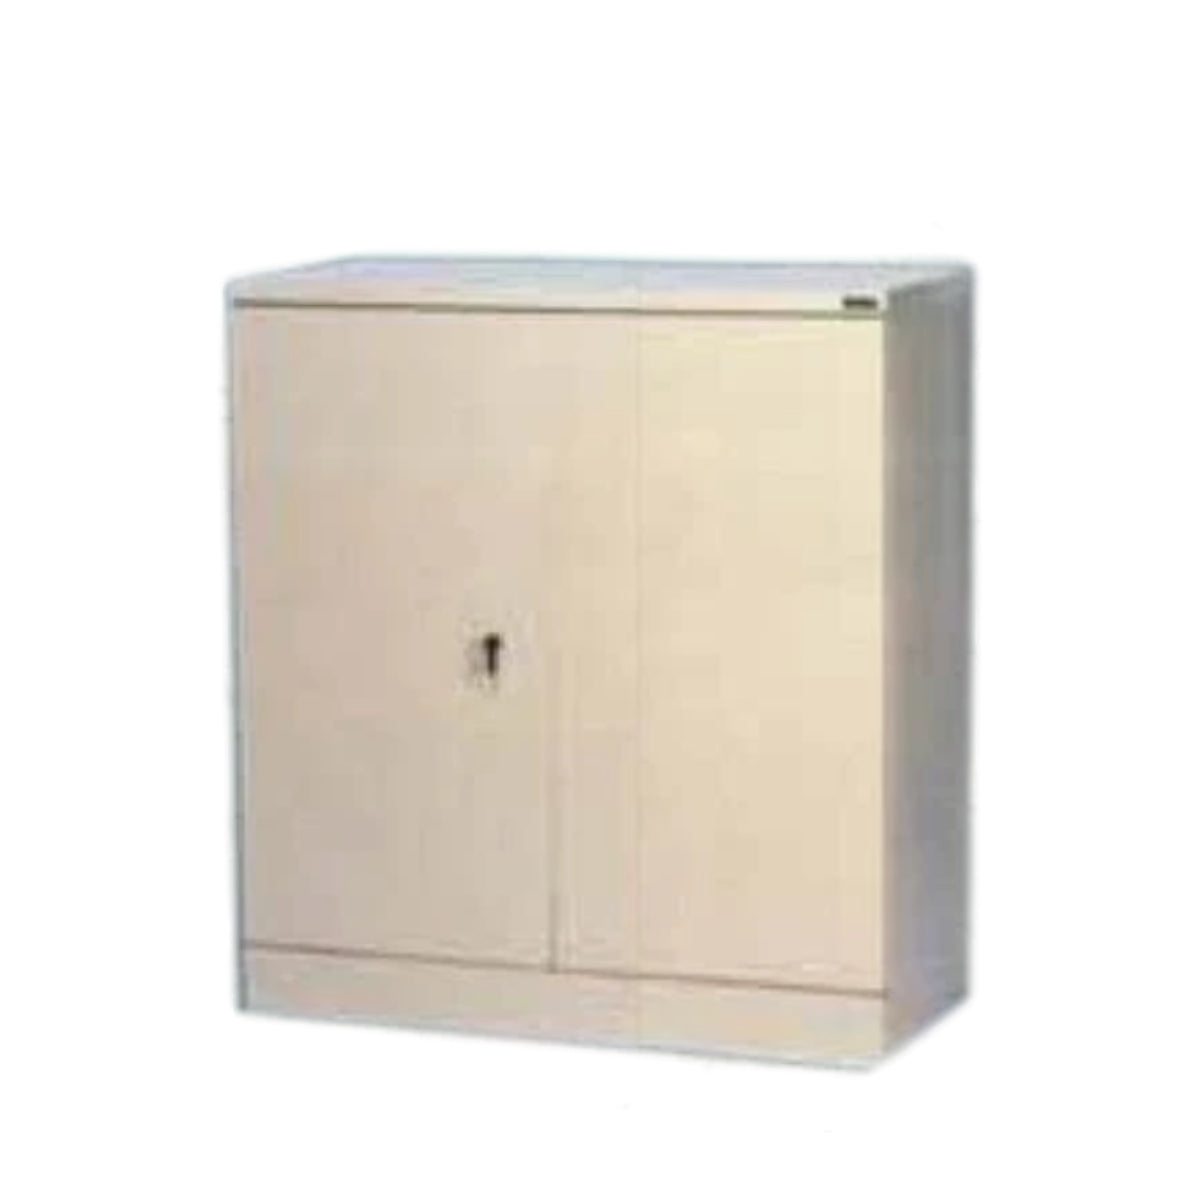 Rexel Filing Cupboard, 101.6x91.8x40 cm, Swing Door, Off-White